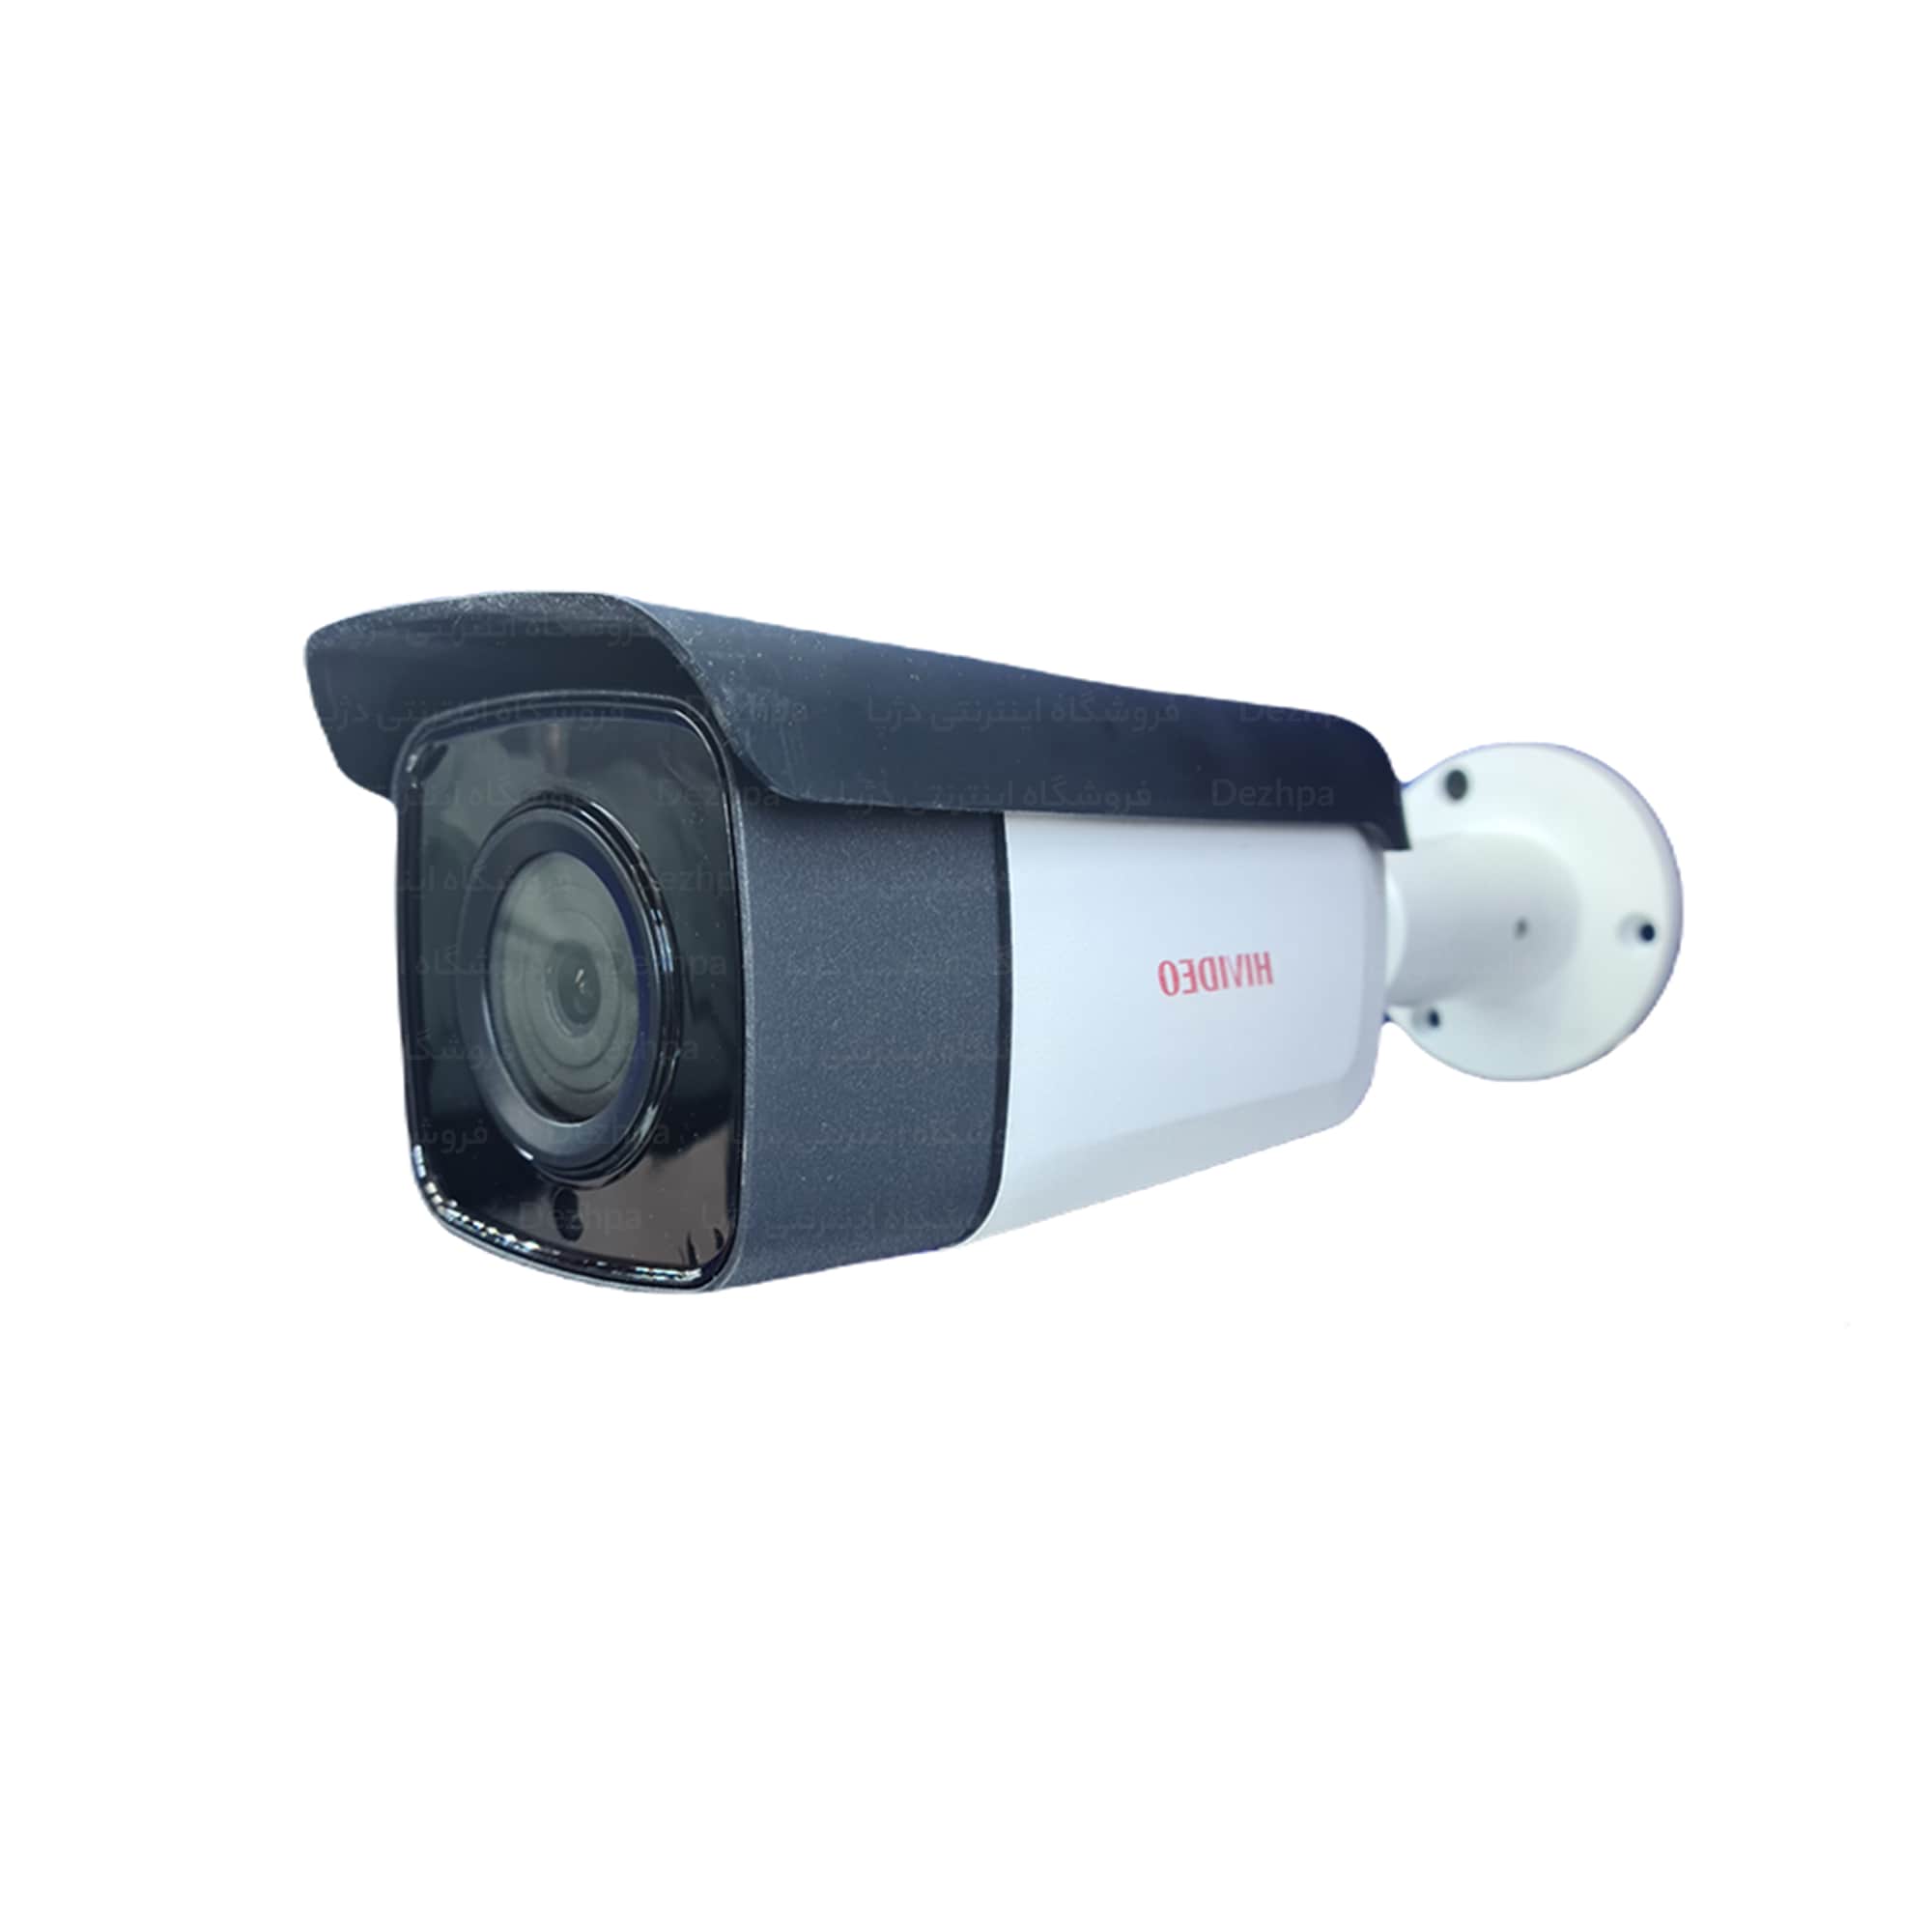 دوربین مداربسته های ویدیو بولت مدل HI B98011